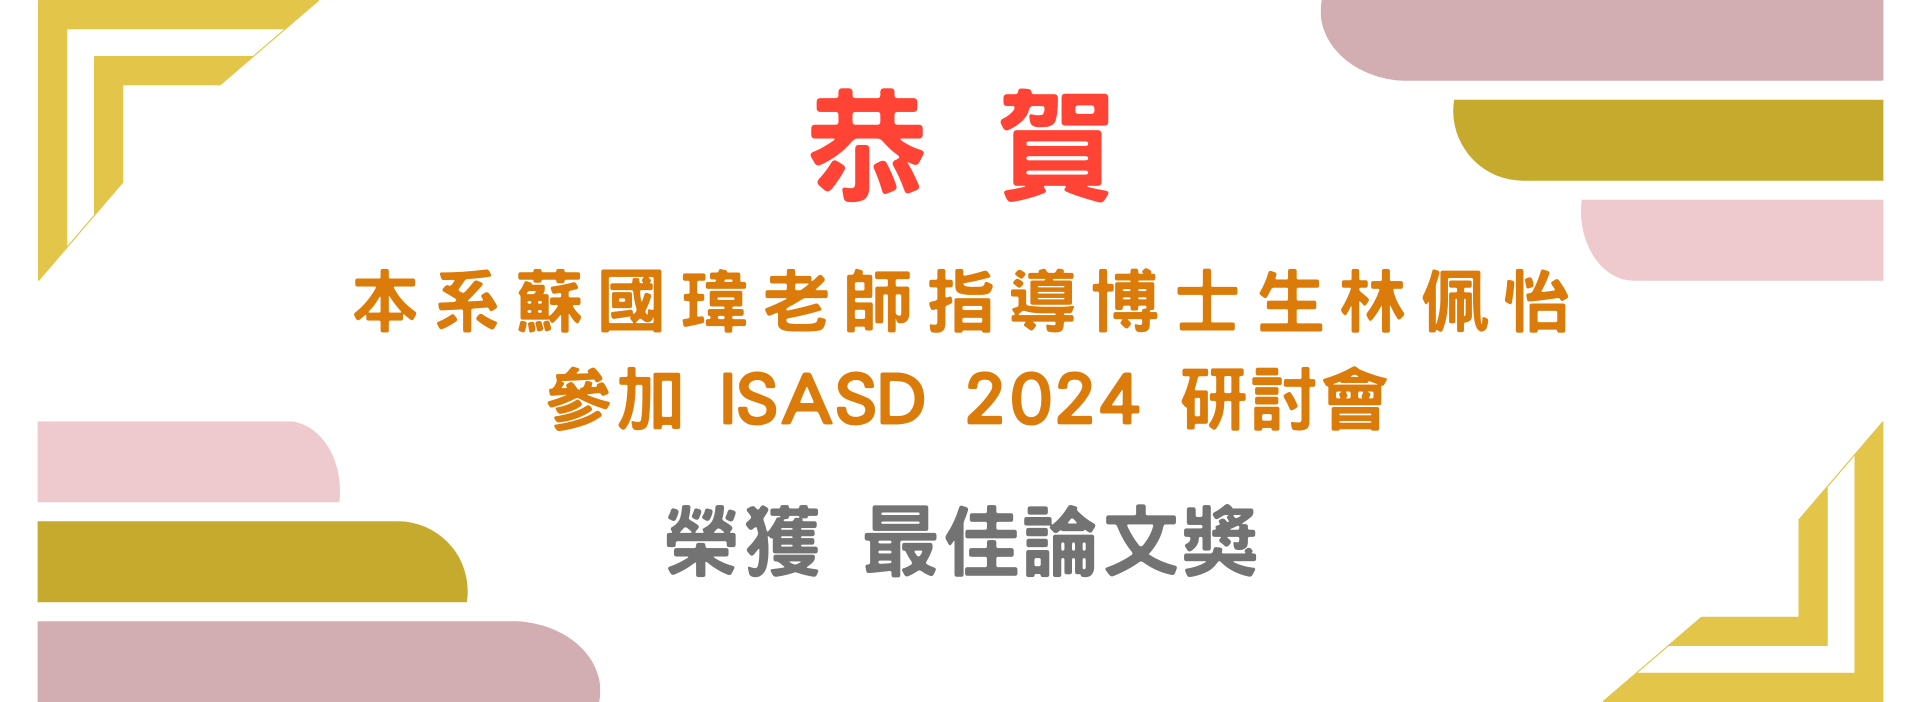 ISASD 2024